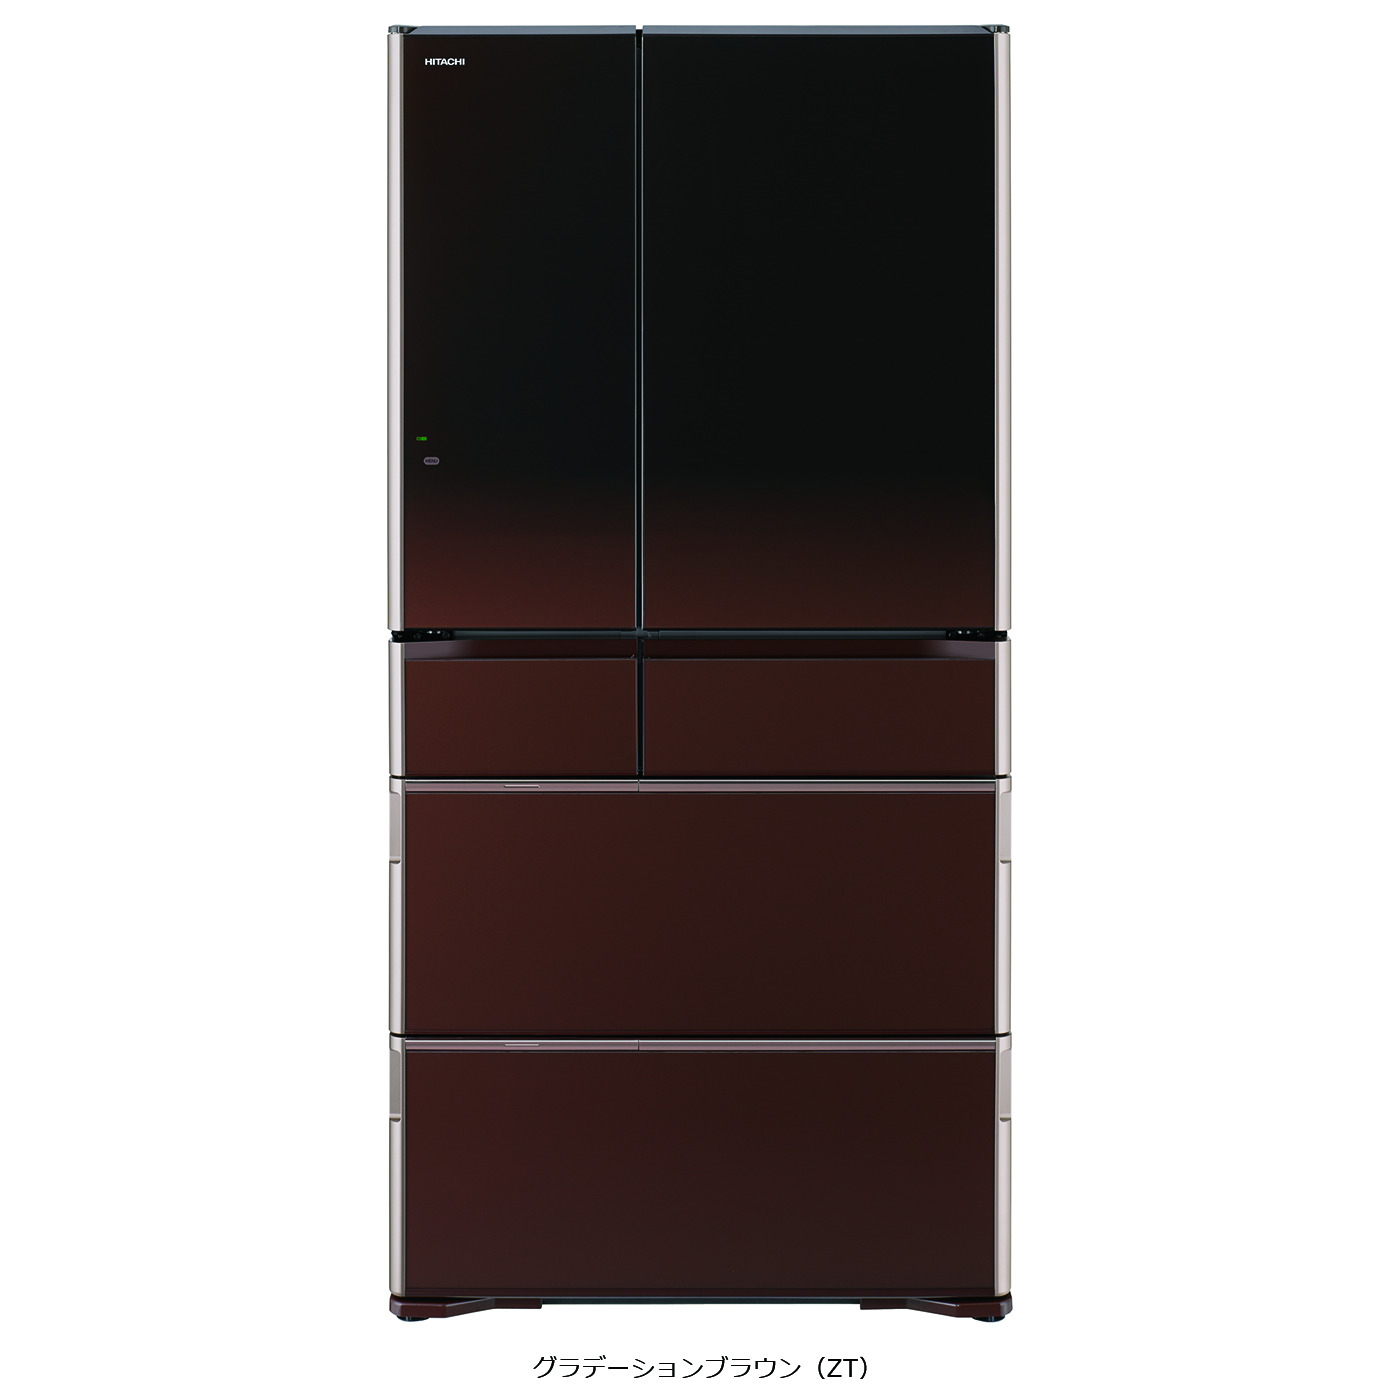 生活家電 冷蔵庫 真空チルド ラグジュアリーWXシリーズ ： 冷蔵庫 ： 日立の家電品